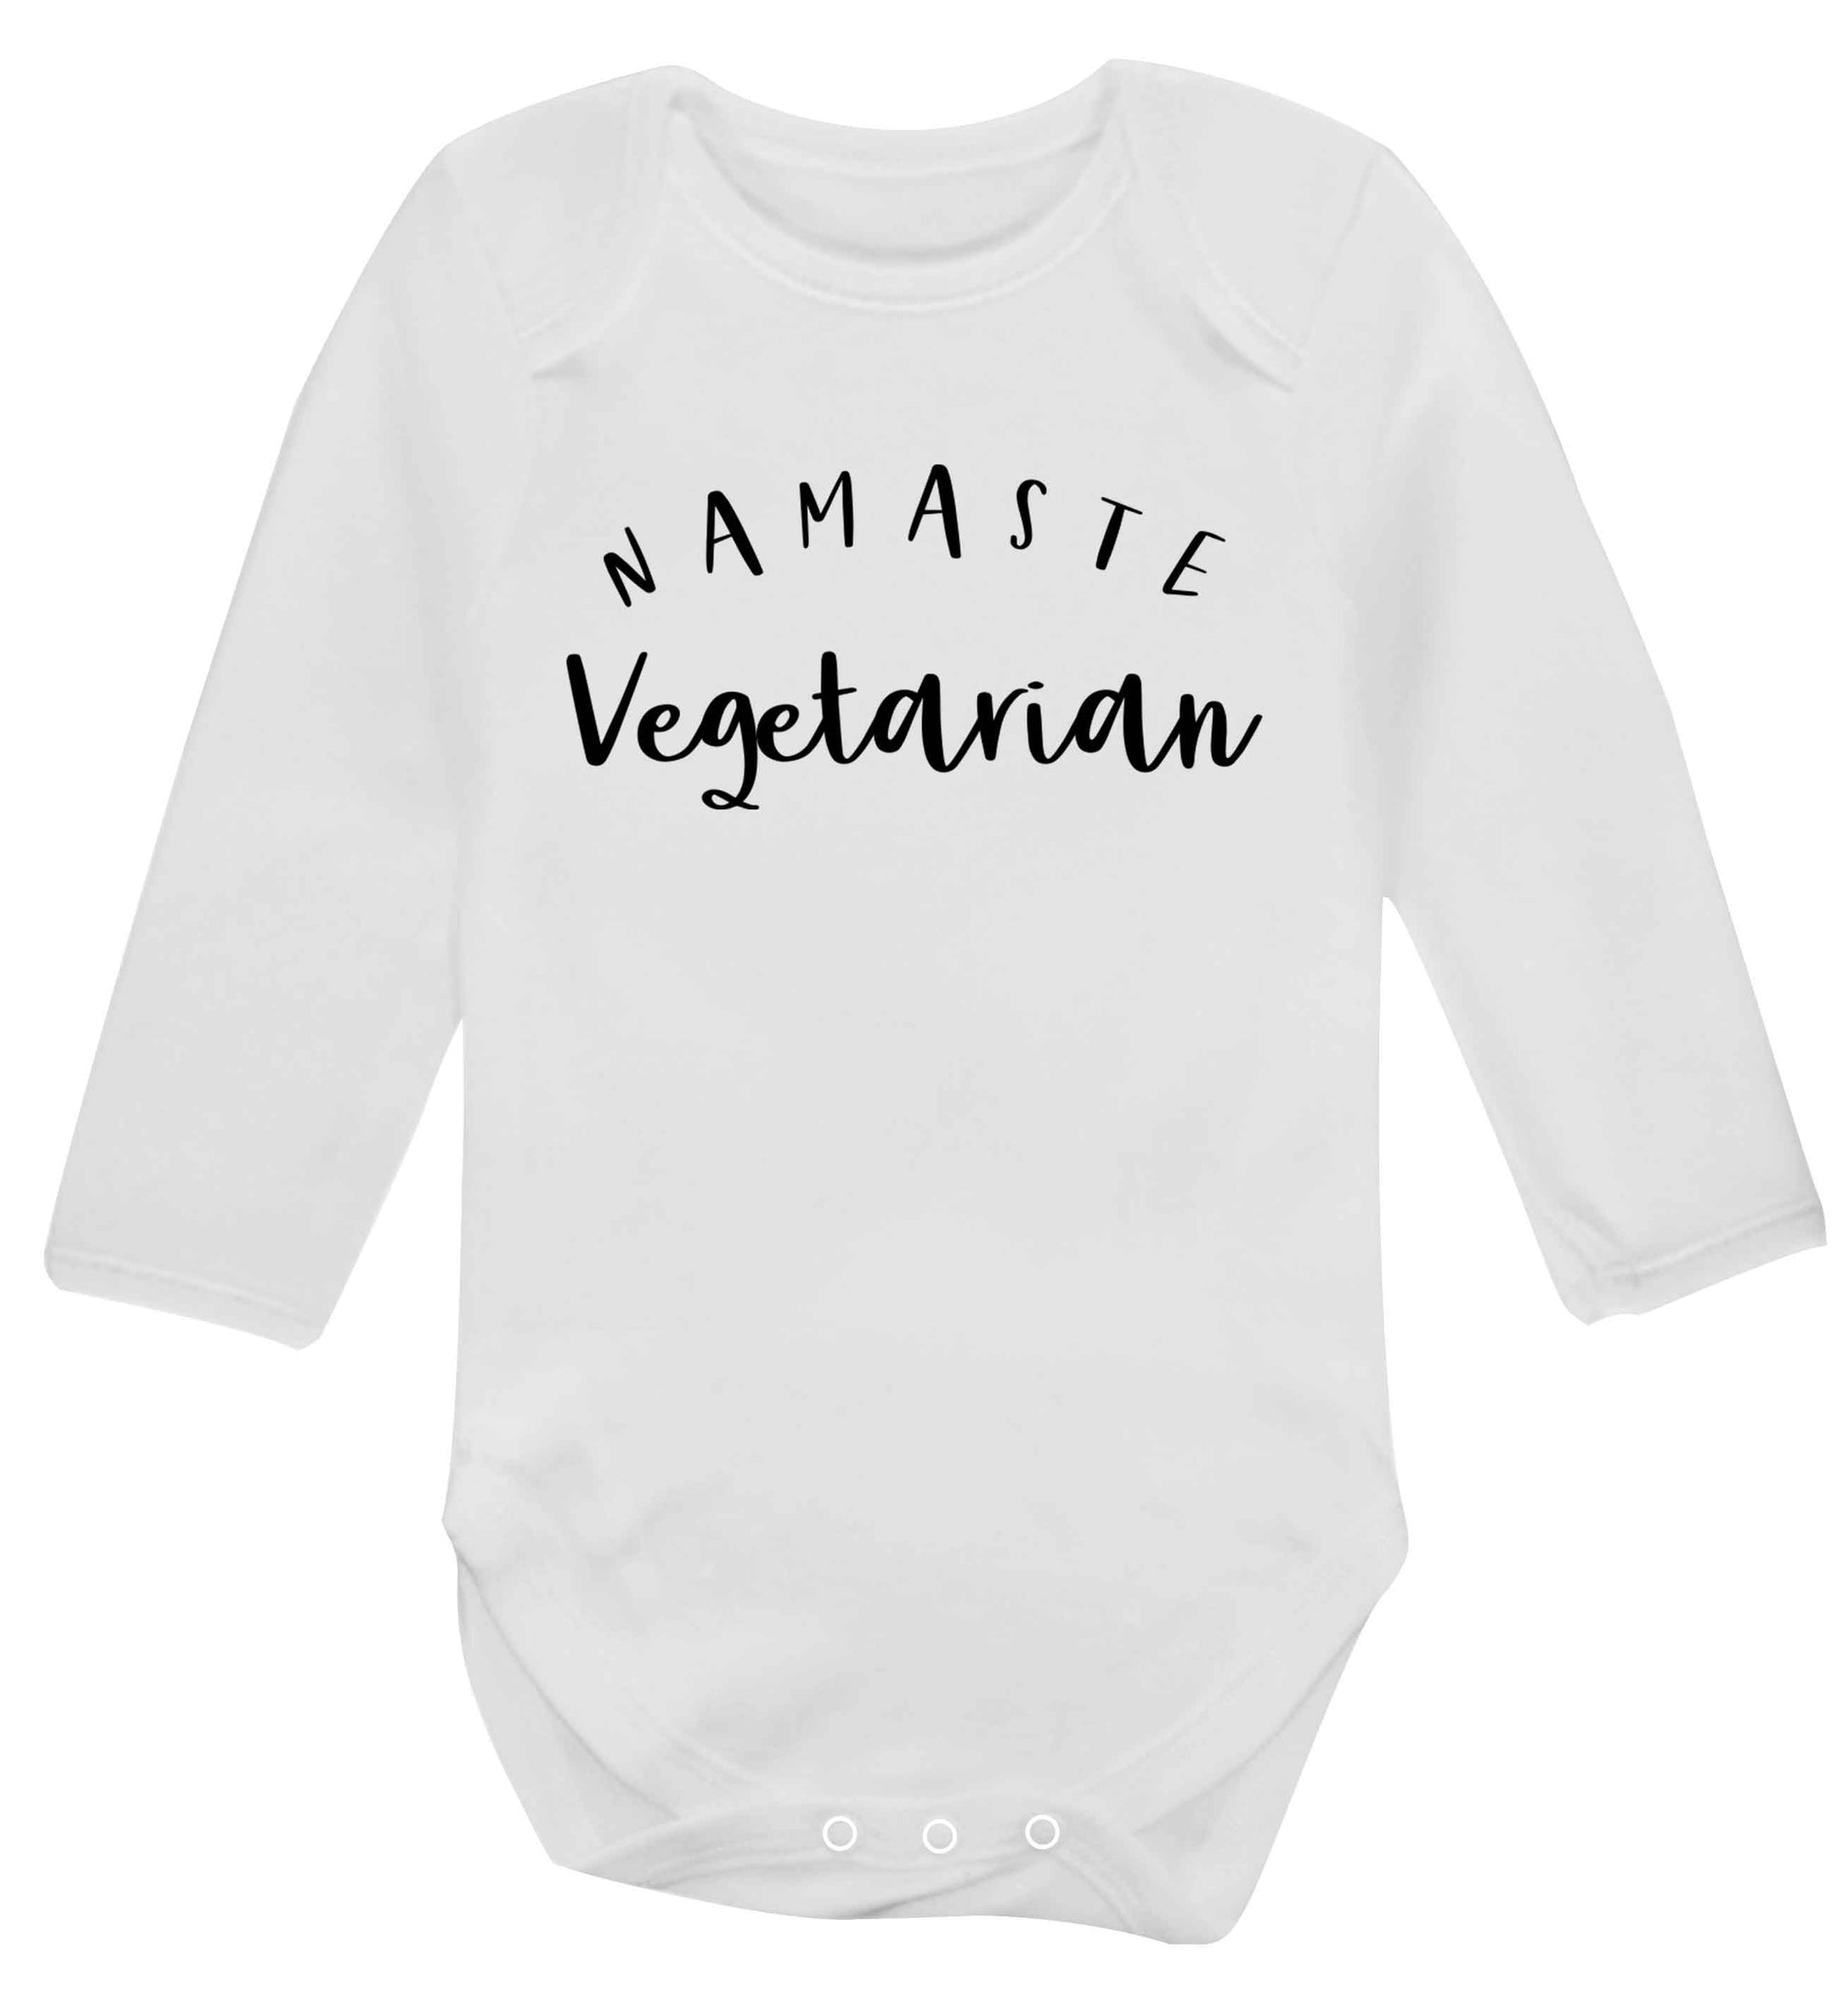 Namaste vegetarian Baby Vest long sleeved white 6-12 months